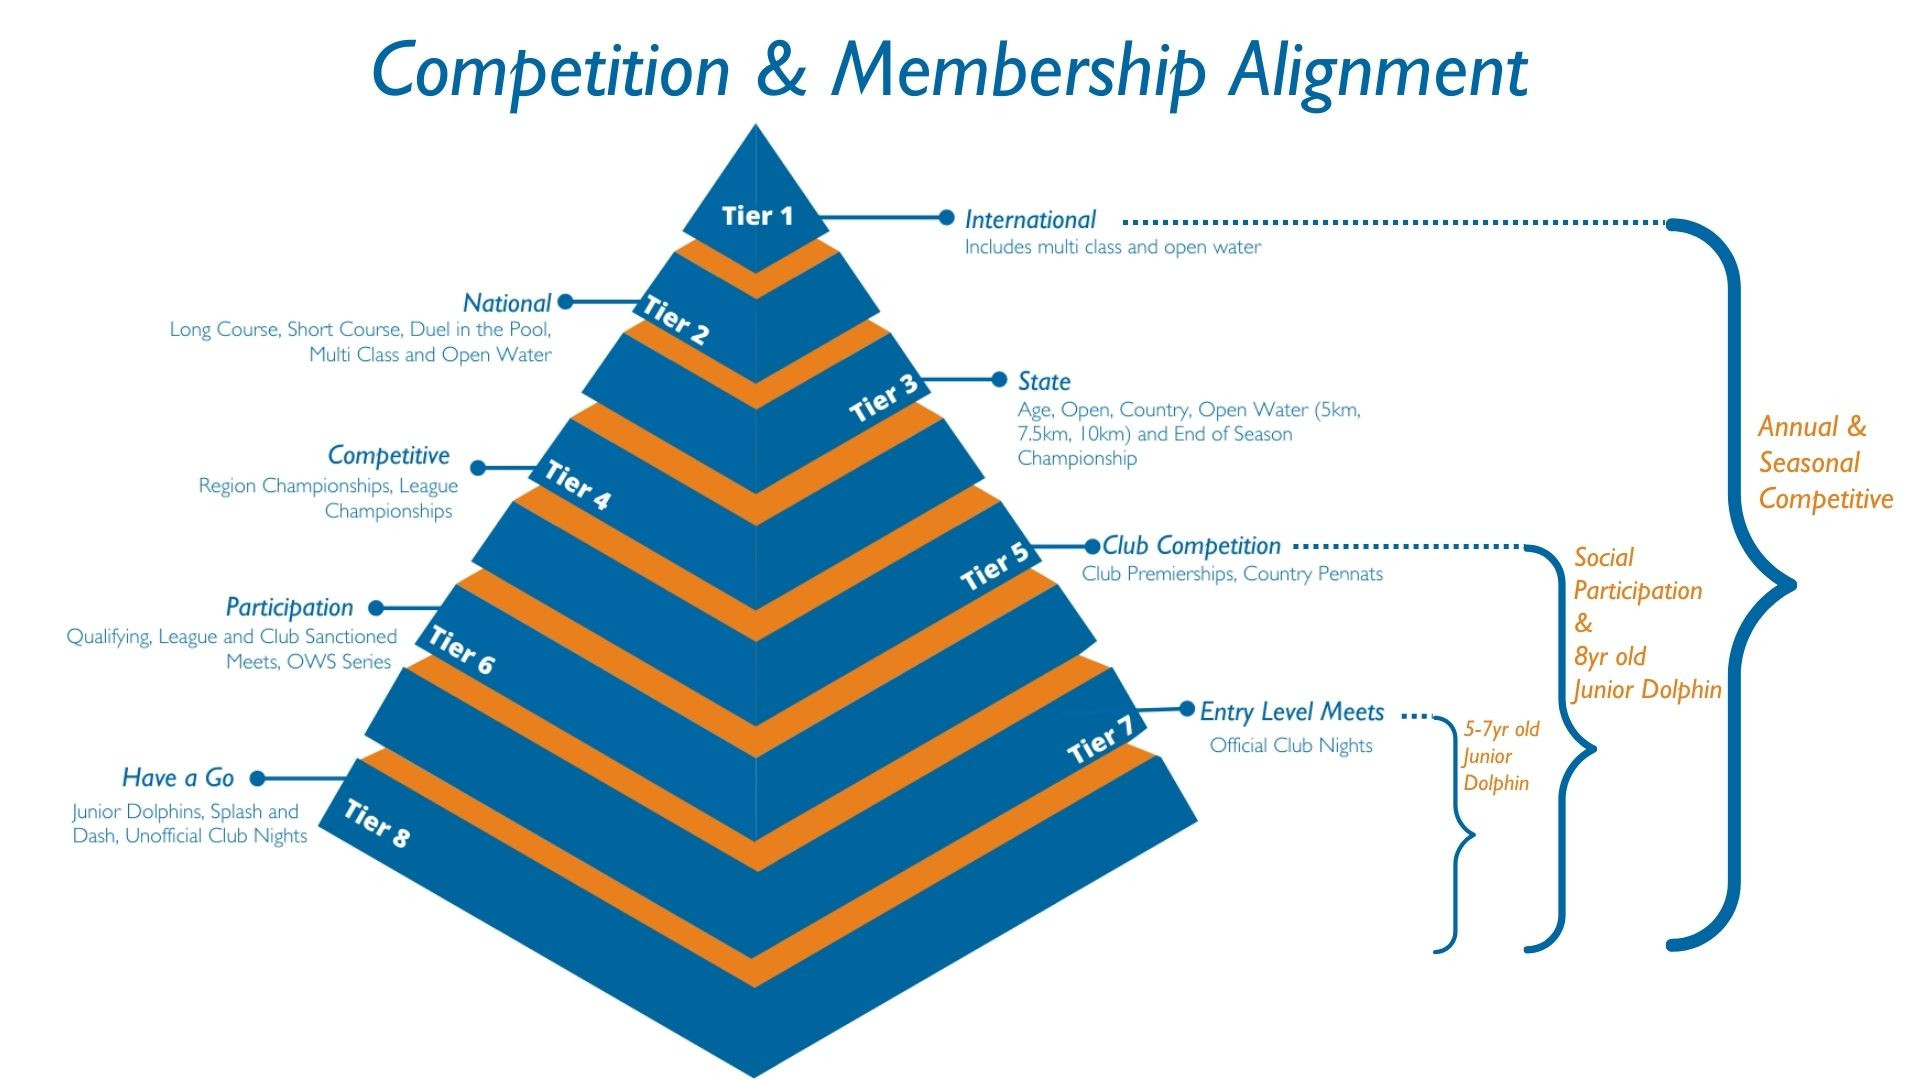 22-23 membership pyramid